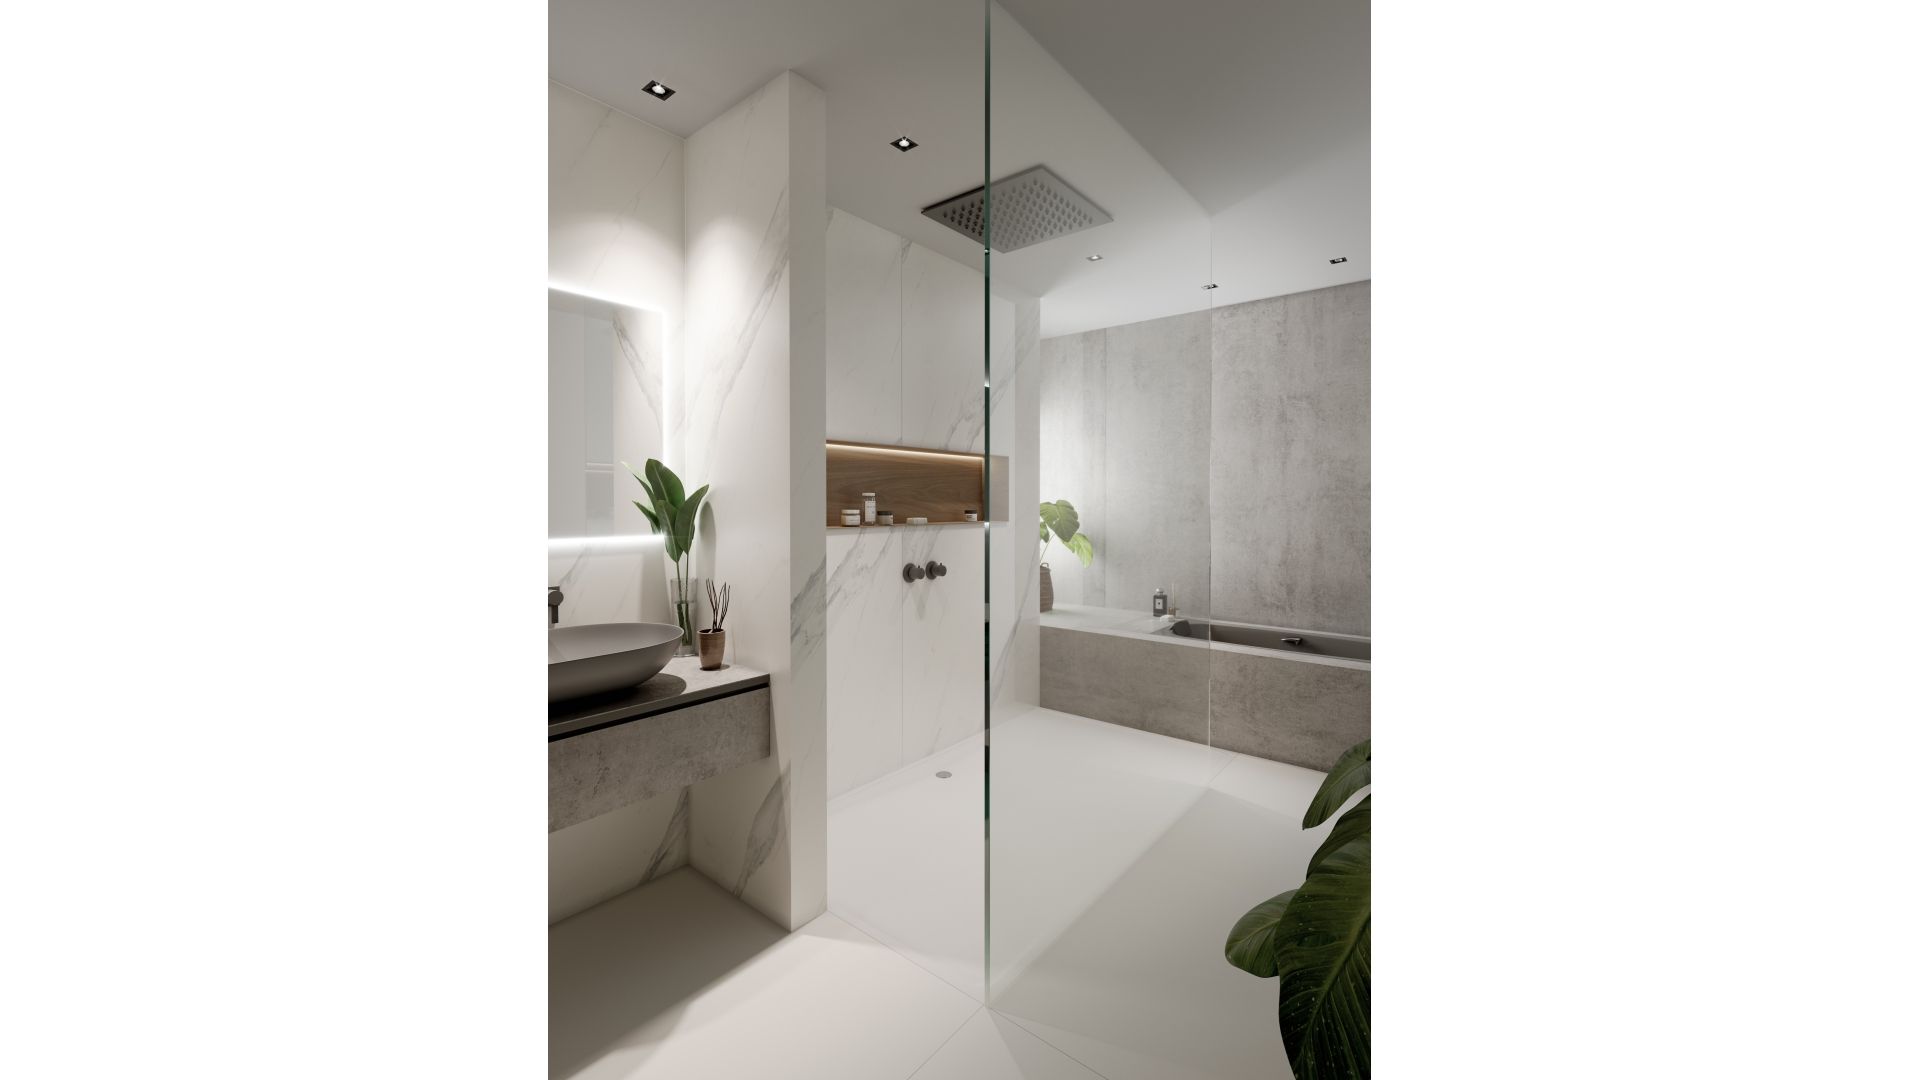 Powierzchnie łazienkowe Cosentino. Produkt zgłoszony do konkursu Dobry Design 2020.